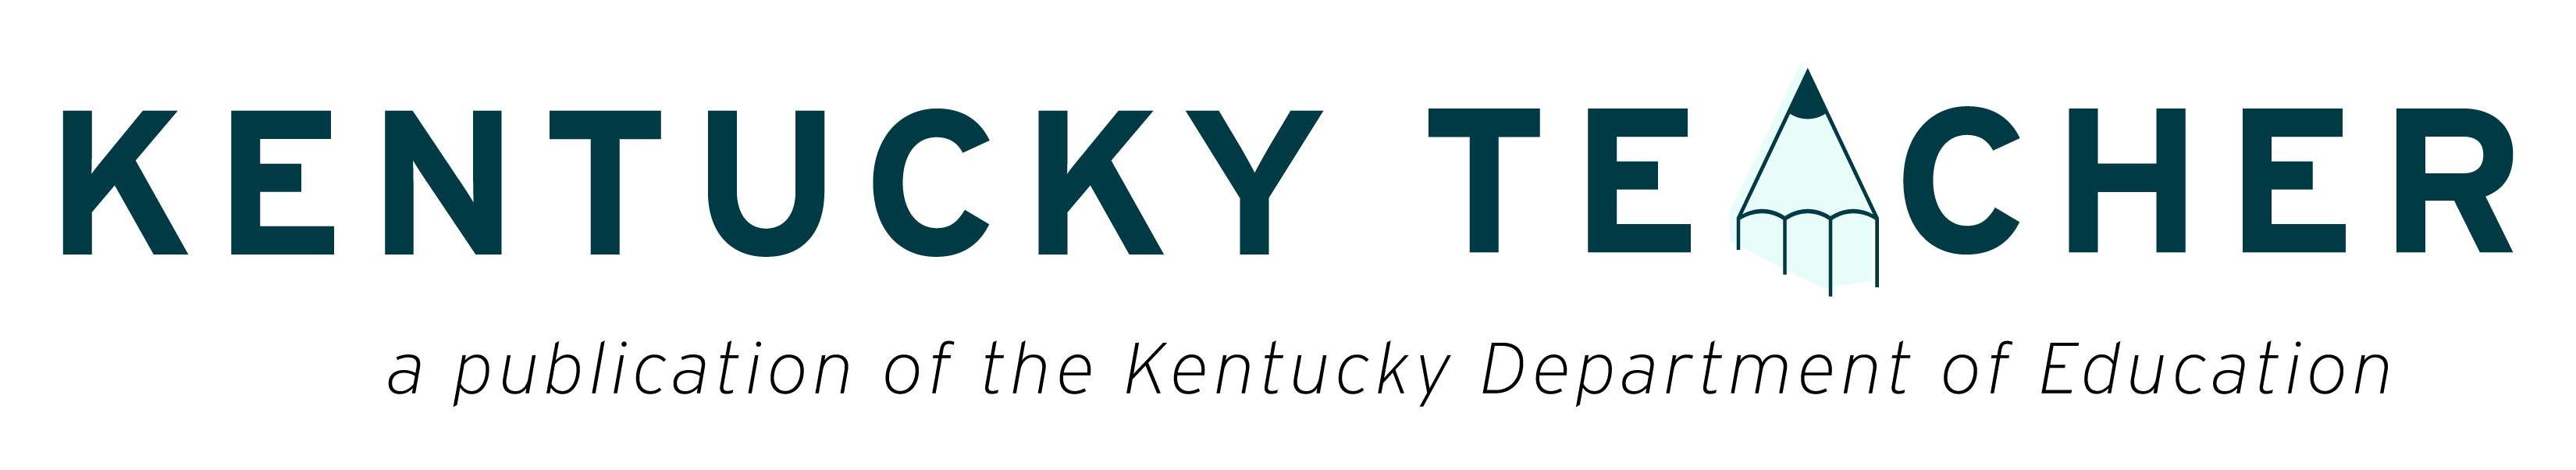 Kentucky Teacher Logo